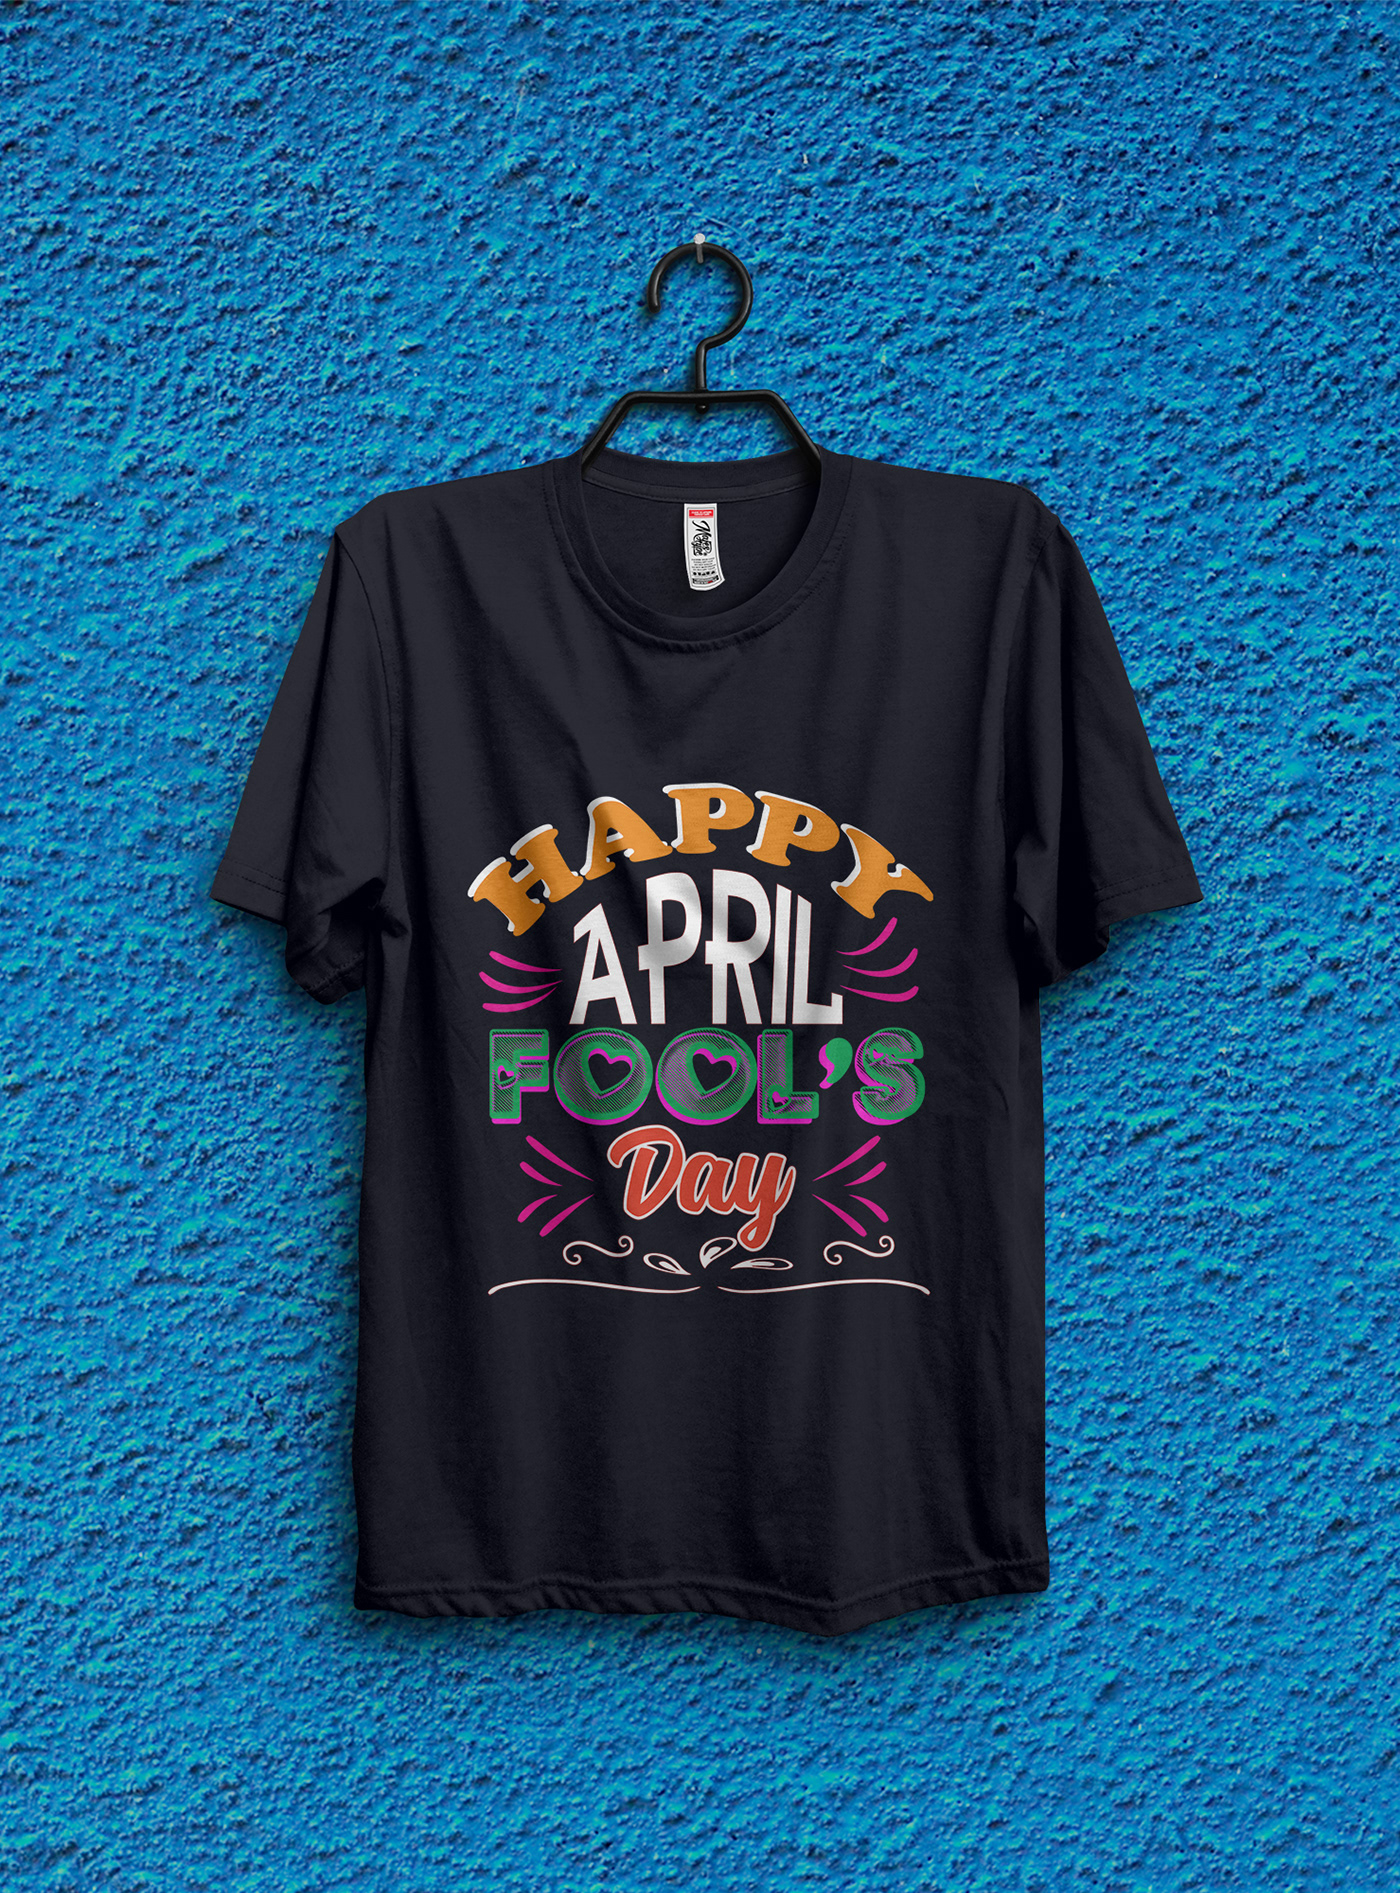 typography logo T-Shirt Design Vintage Design typography   custom t-shirt t-shirt ILLUSTRATION  tees April fool’s design April fool’s T shirt